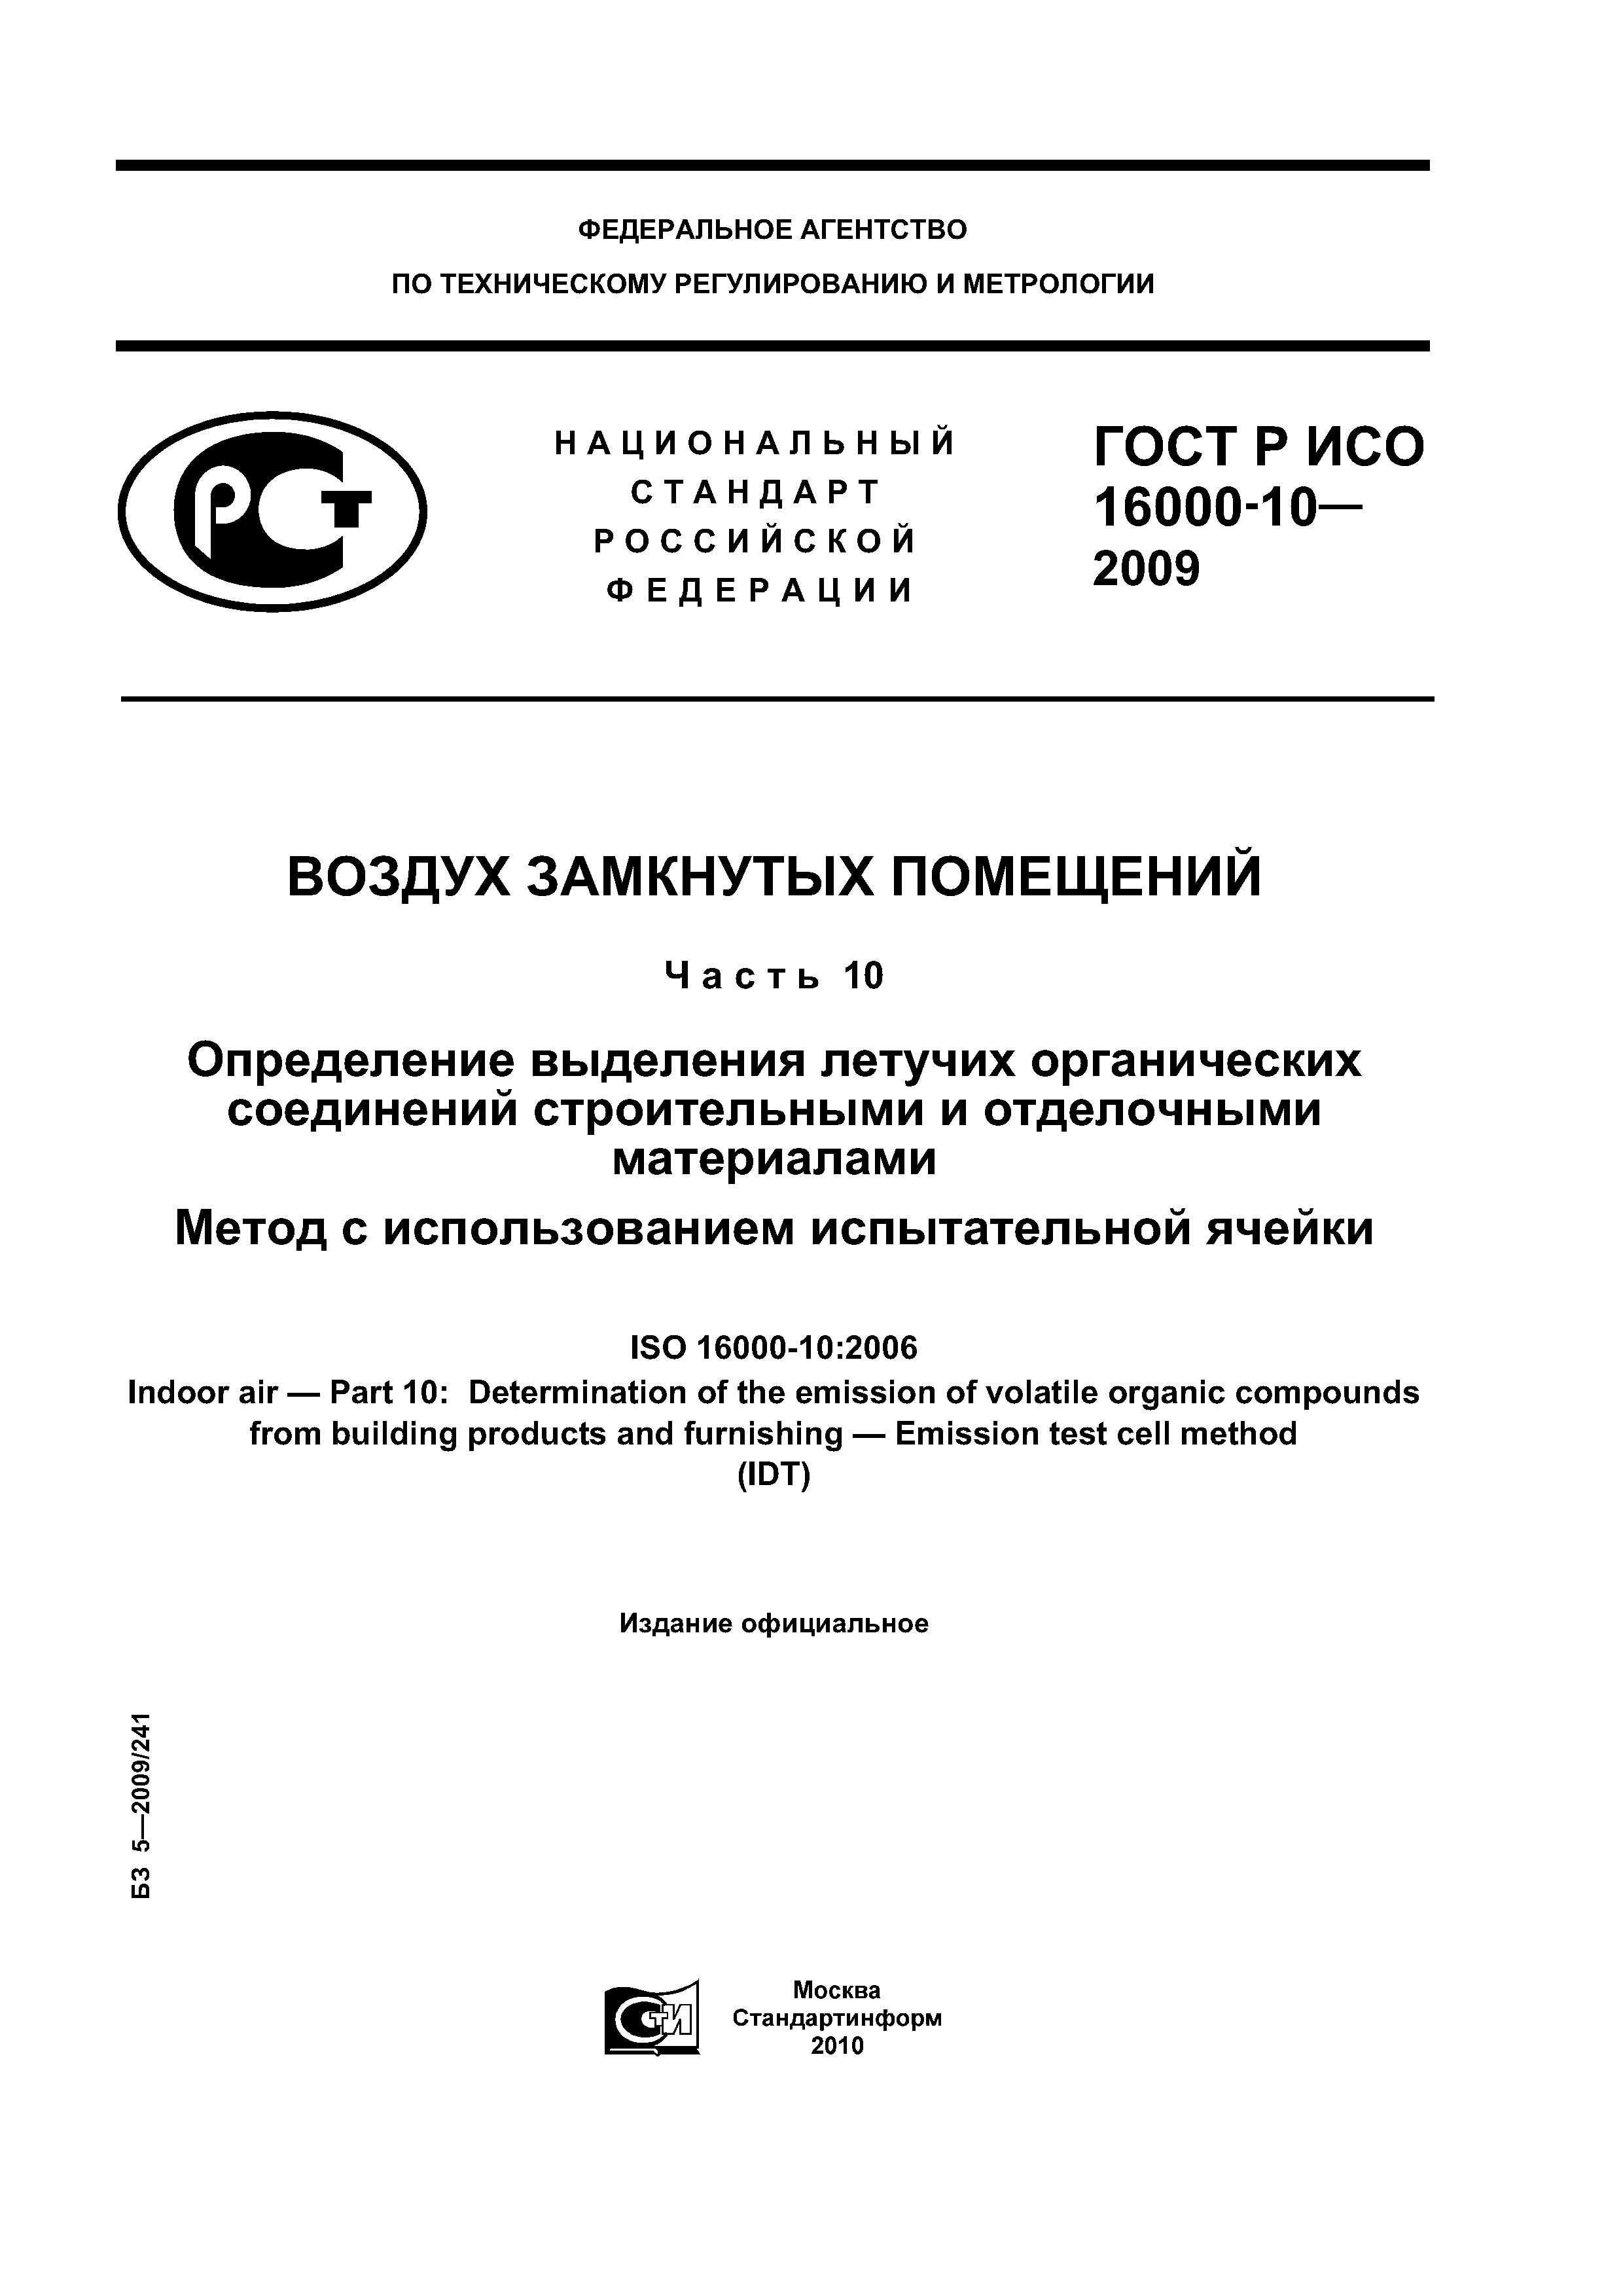 ГОСТ Р ИСО 16000-10-2009